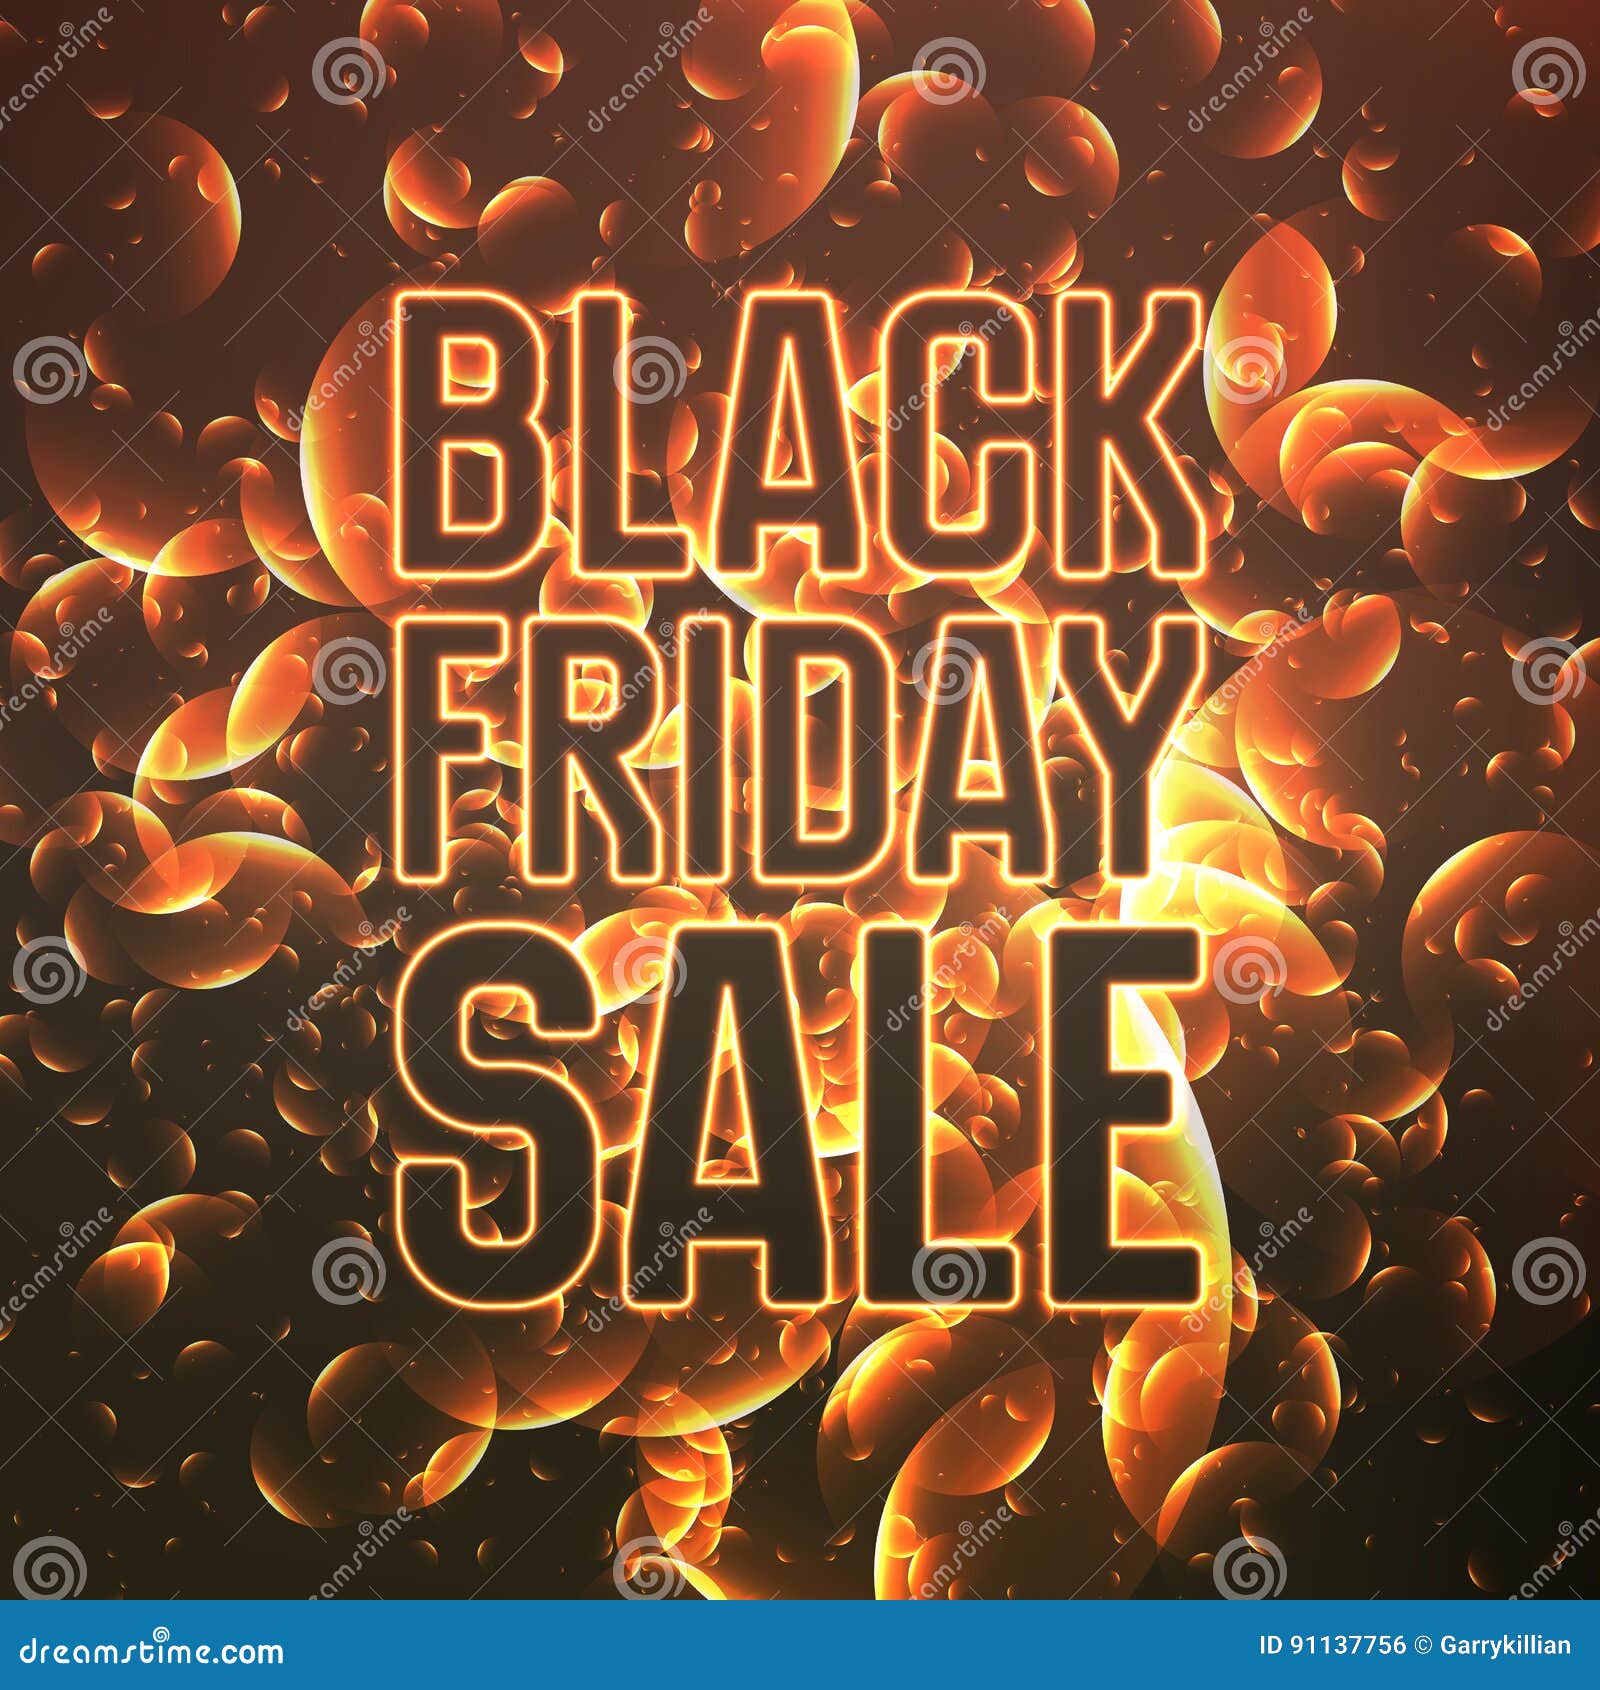 Black Friday Sale Background Stock Illustration - Download Image